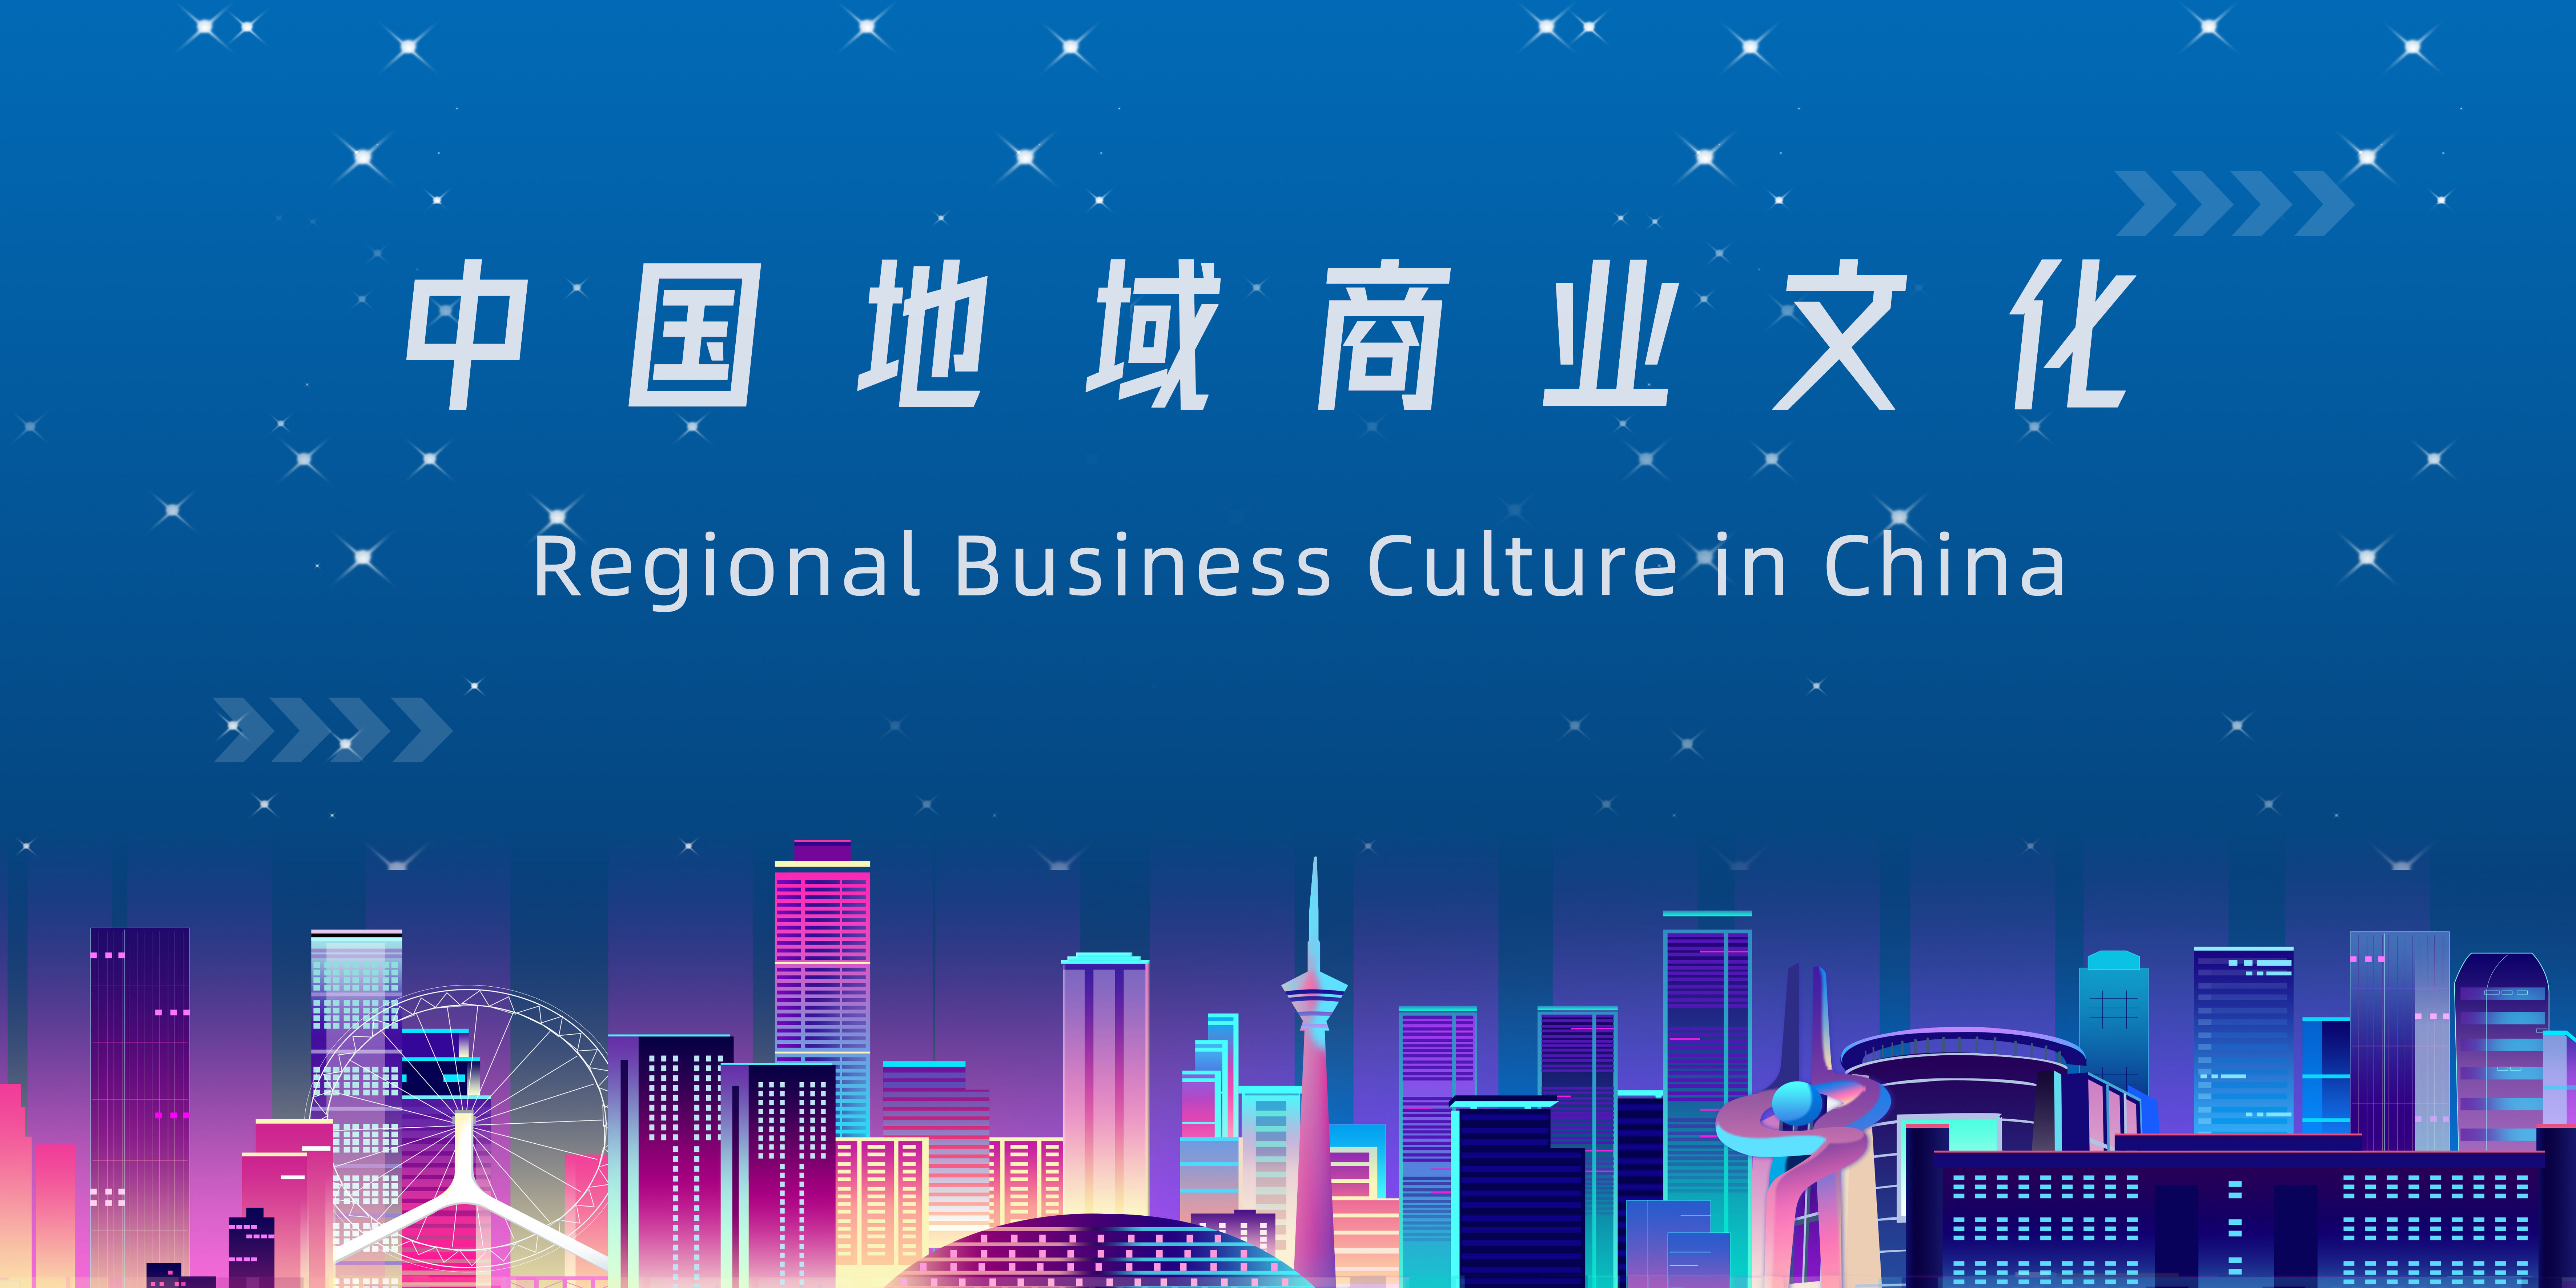 Regional Business Culture in China